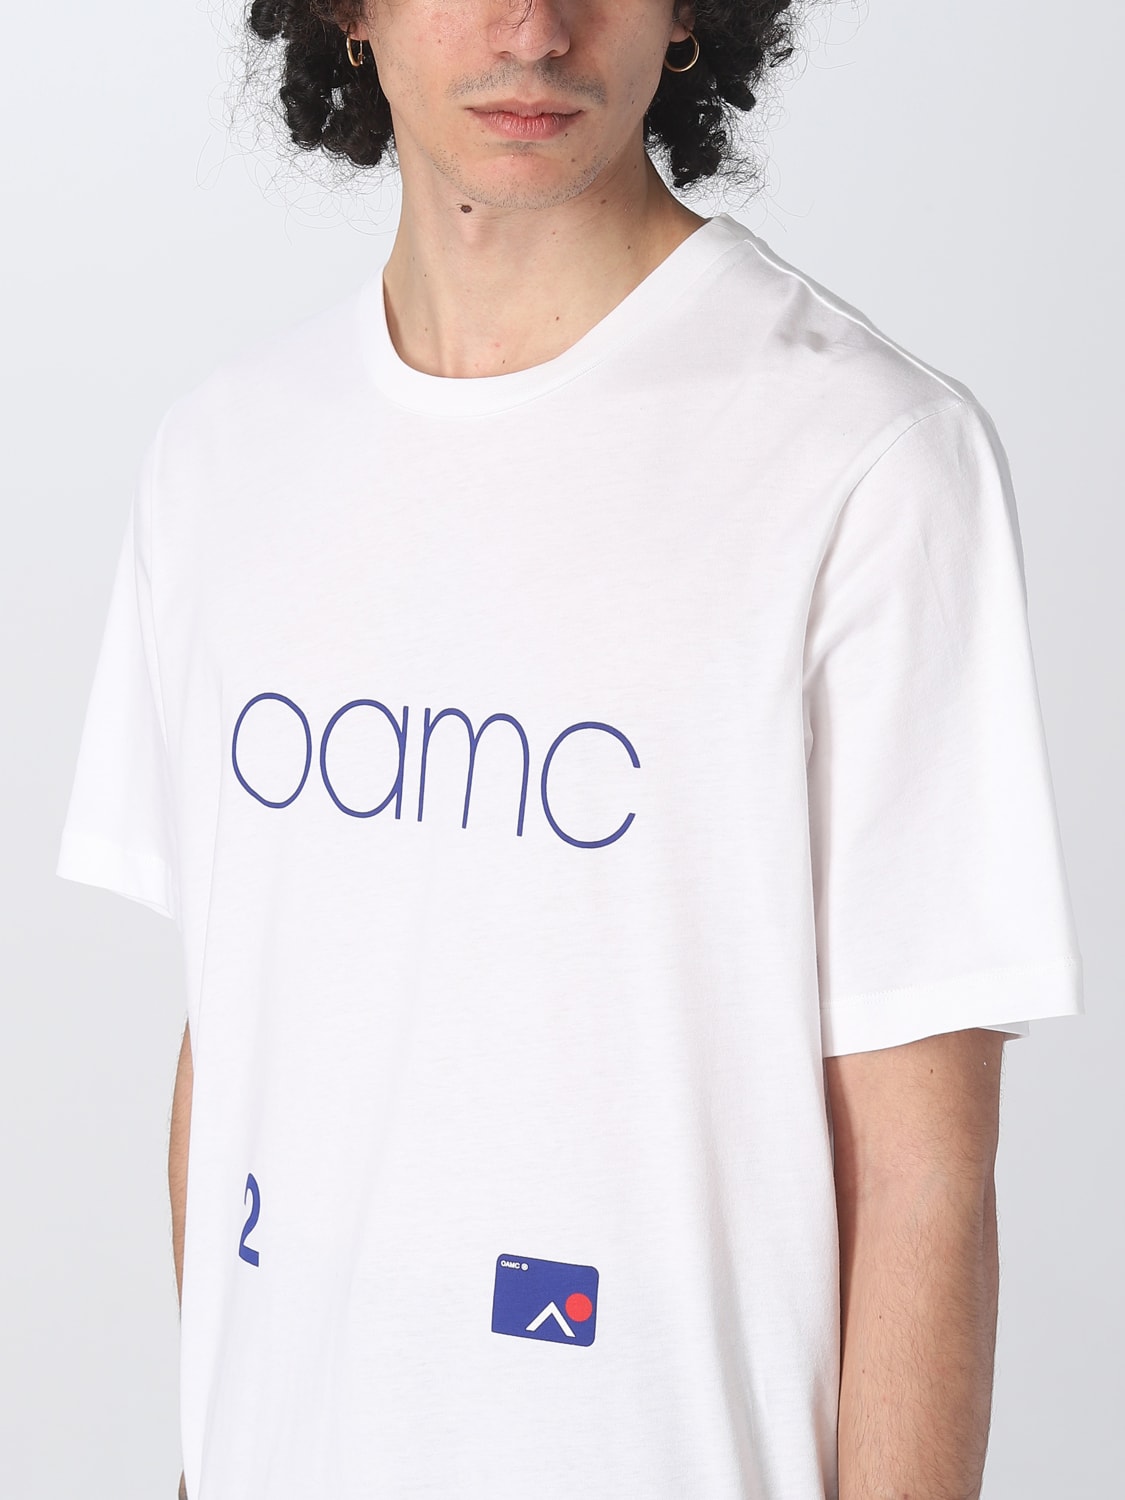 シュプリームSupOAMC デザインTシャツ Lサイズ ホワイト 春,夏,秋 ...